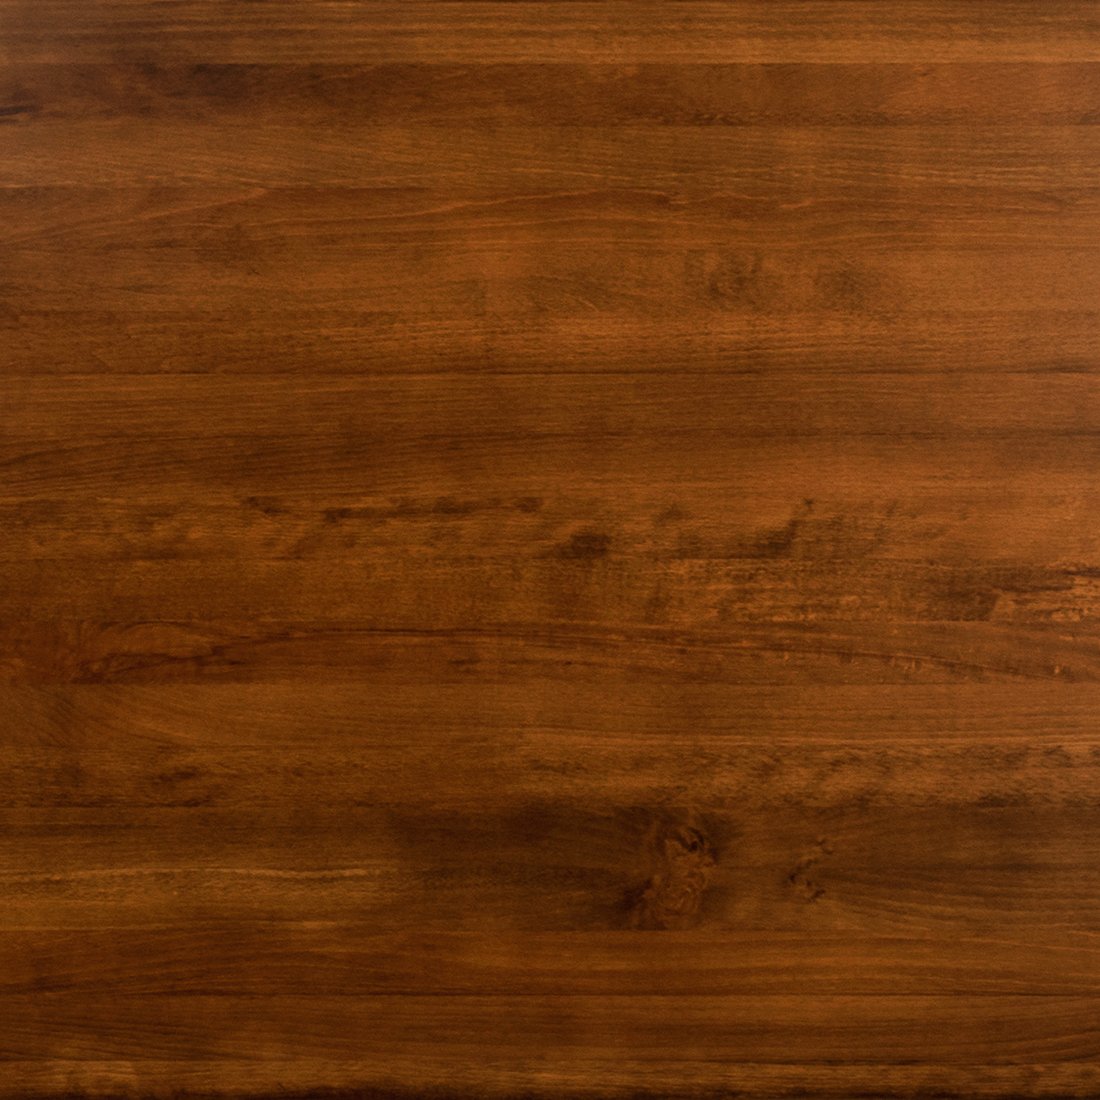 Dark brown wood table top